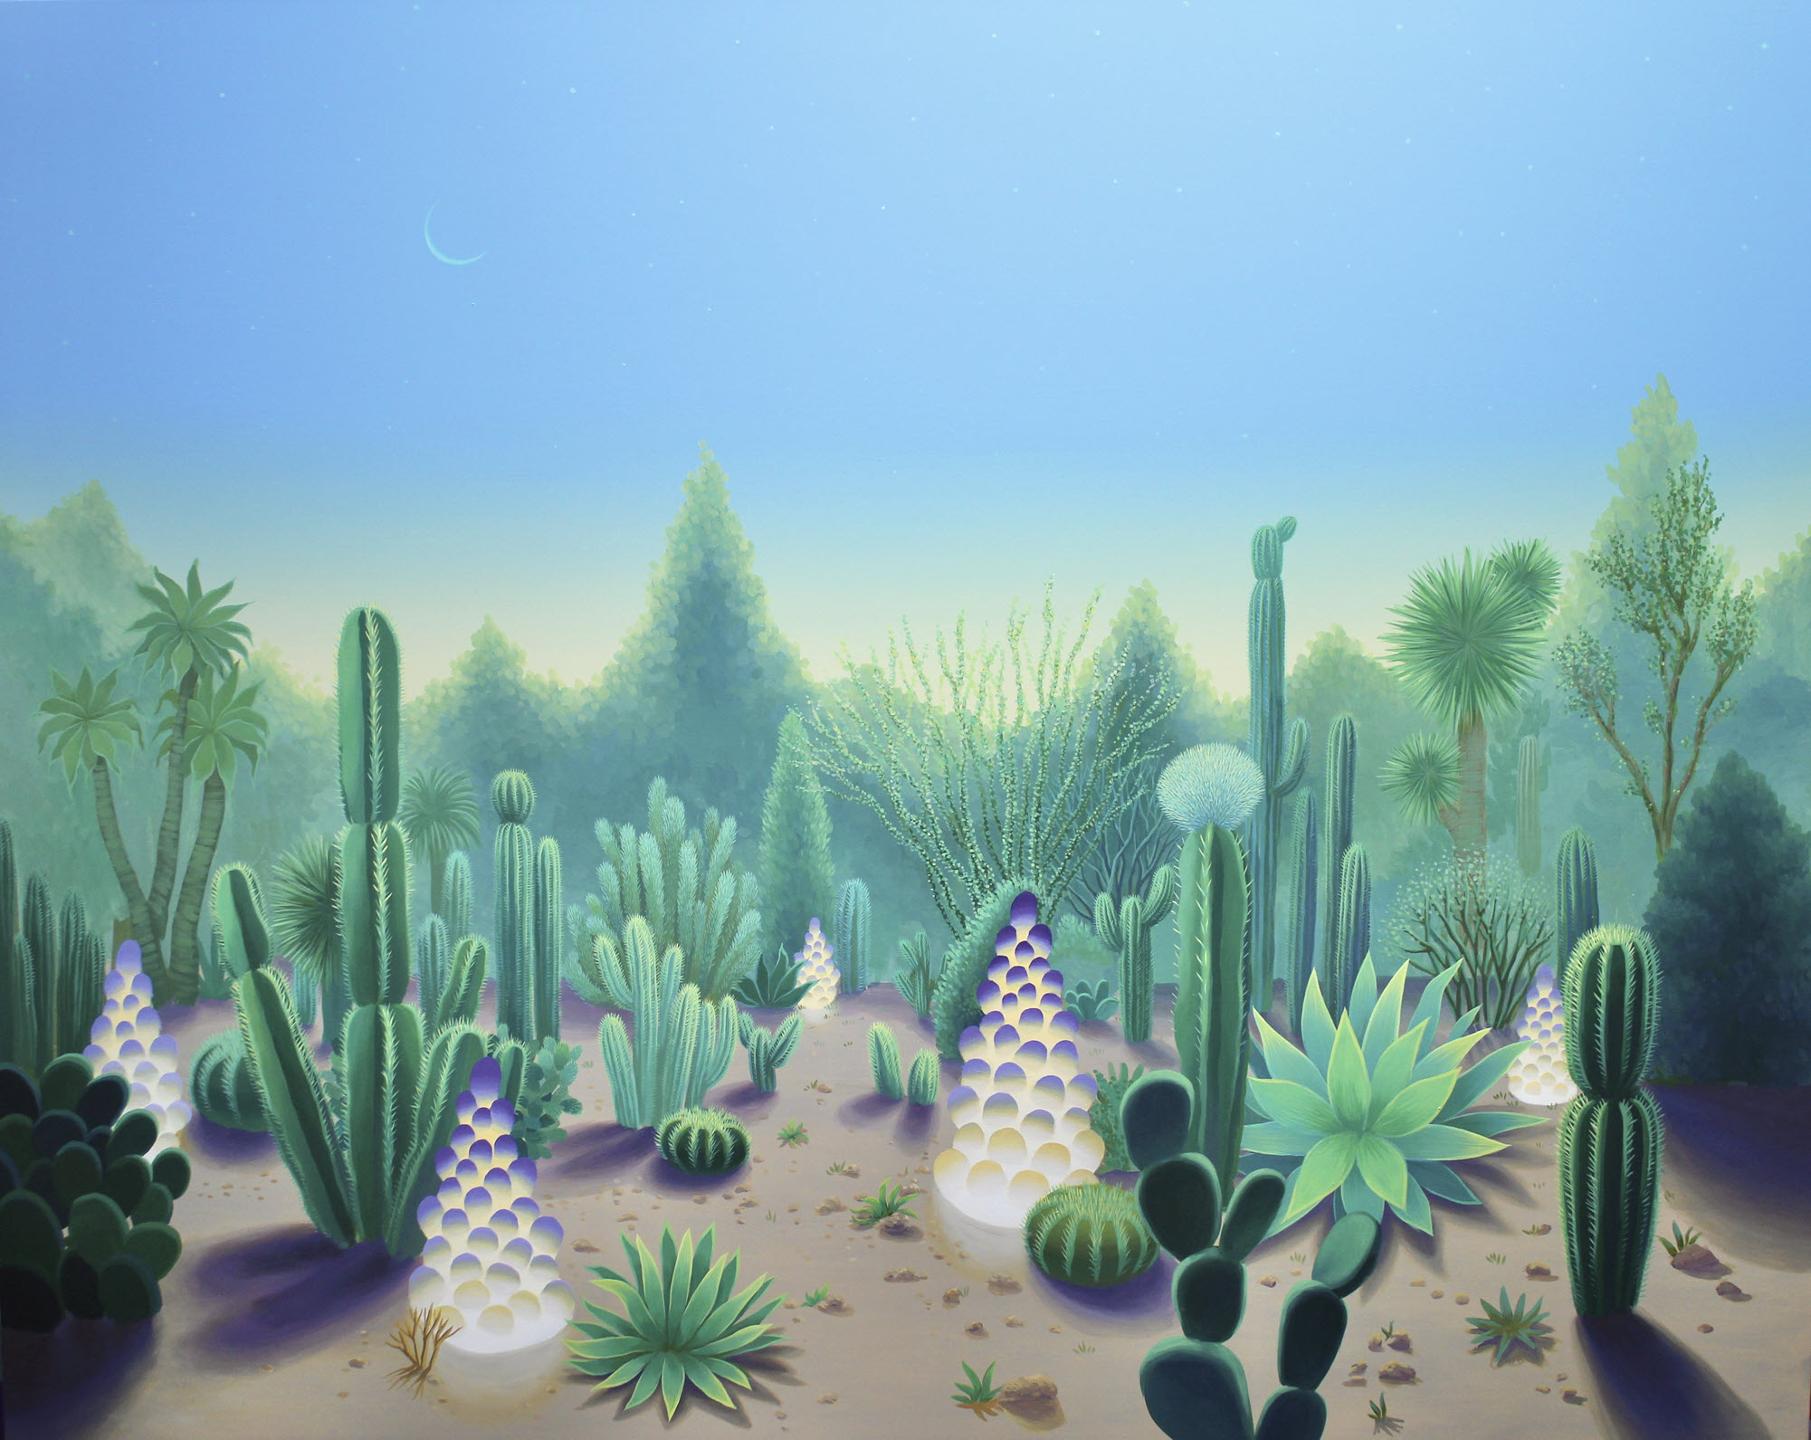 A desert garden